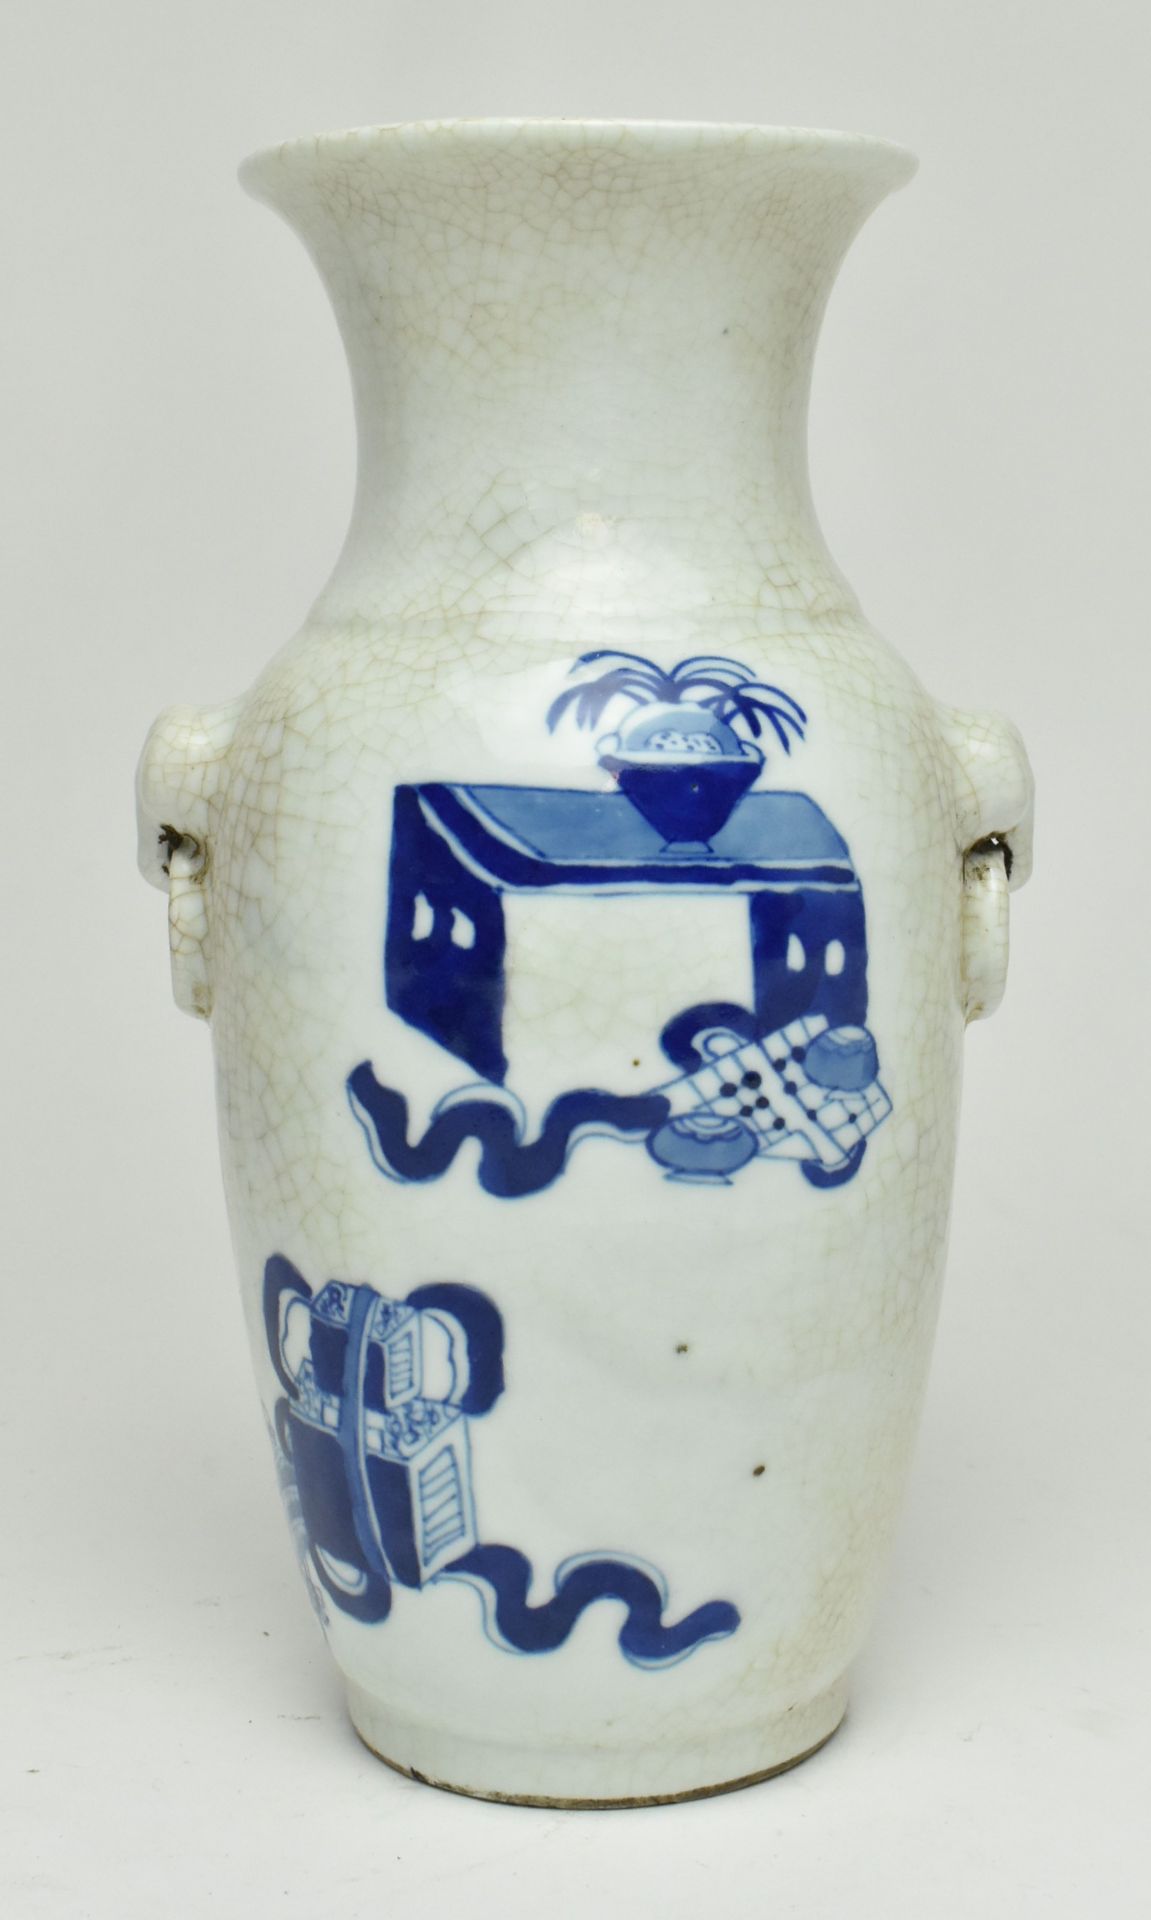 SWATOW WARE CRACKLED BLUE AND WHITE VASE 漳州窑青花博古花瓶 - Bild 2 aus 6